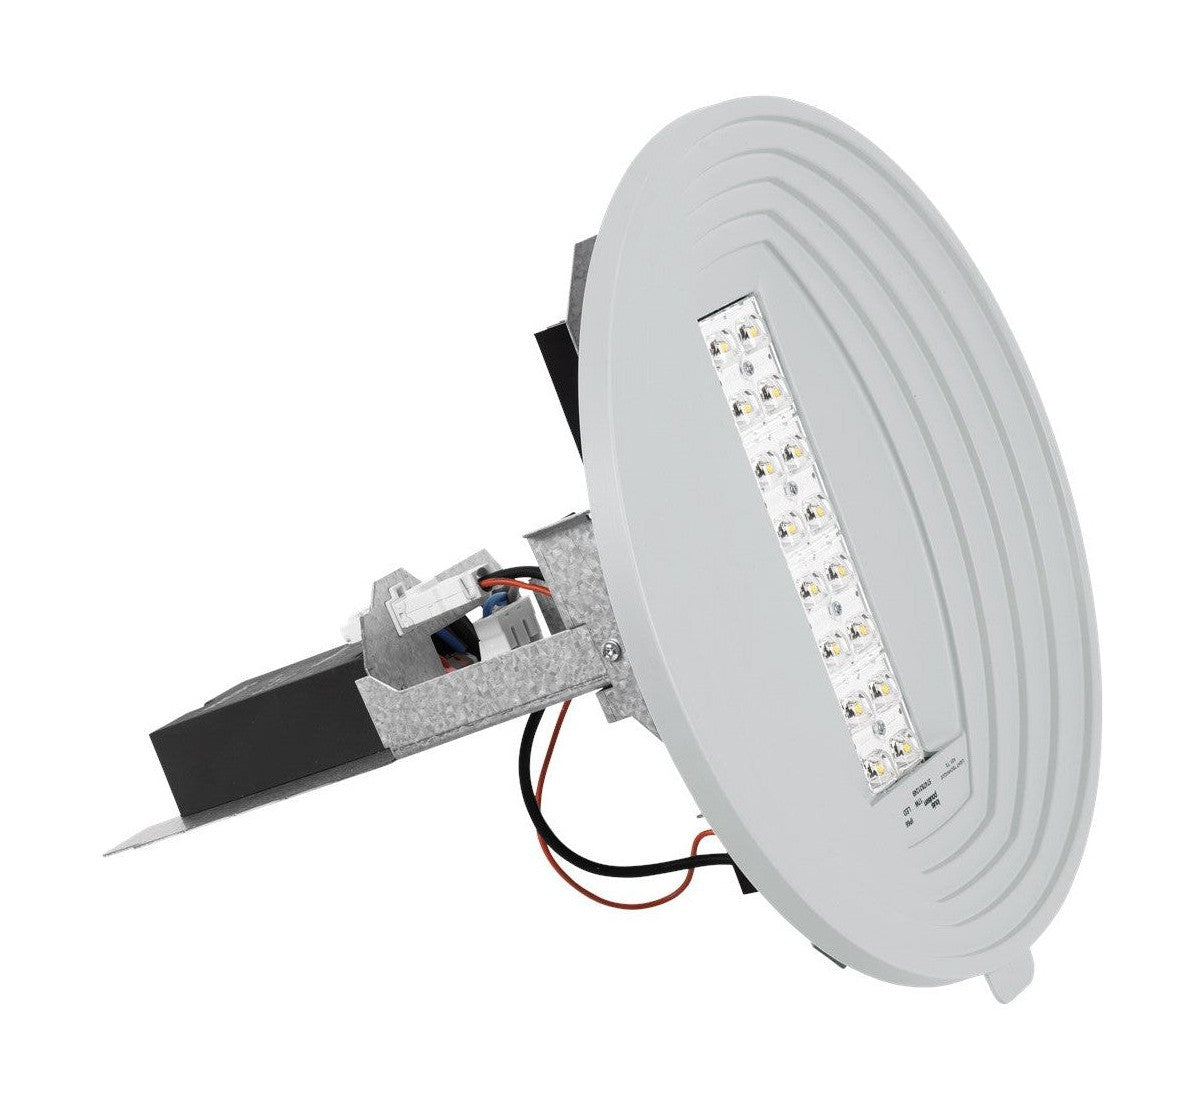 Kit de actualización de LED LED de Louis Poulsen LP 4233 Lumens, Clo